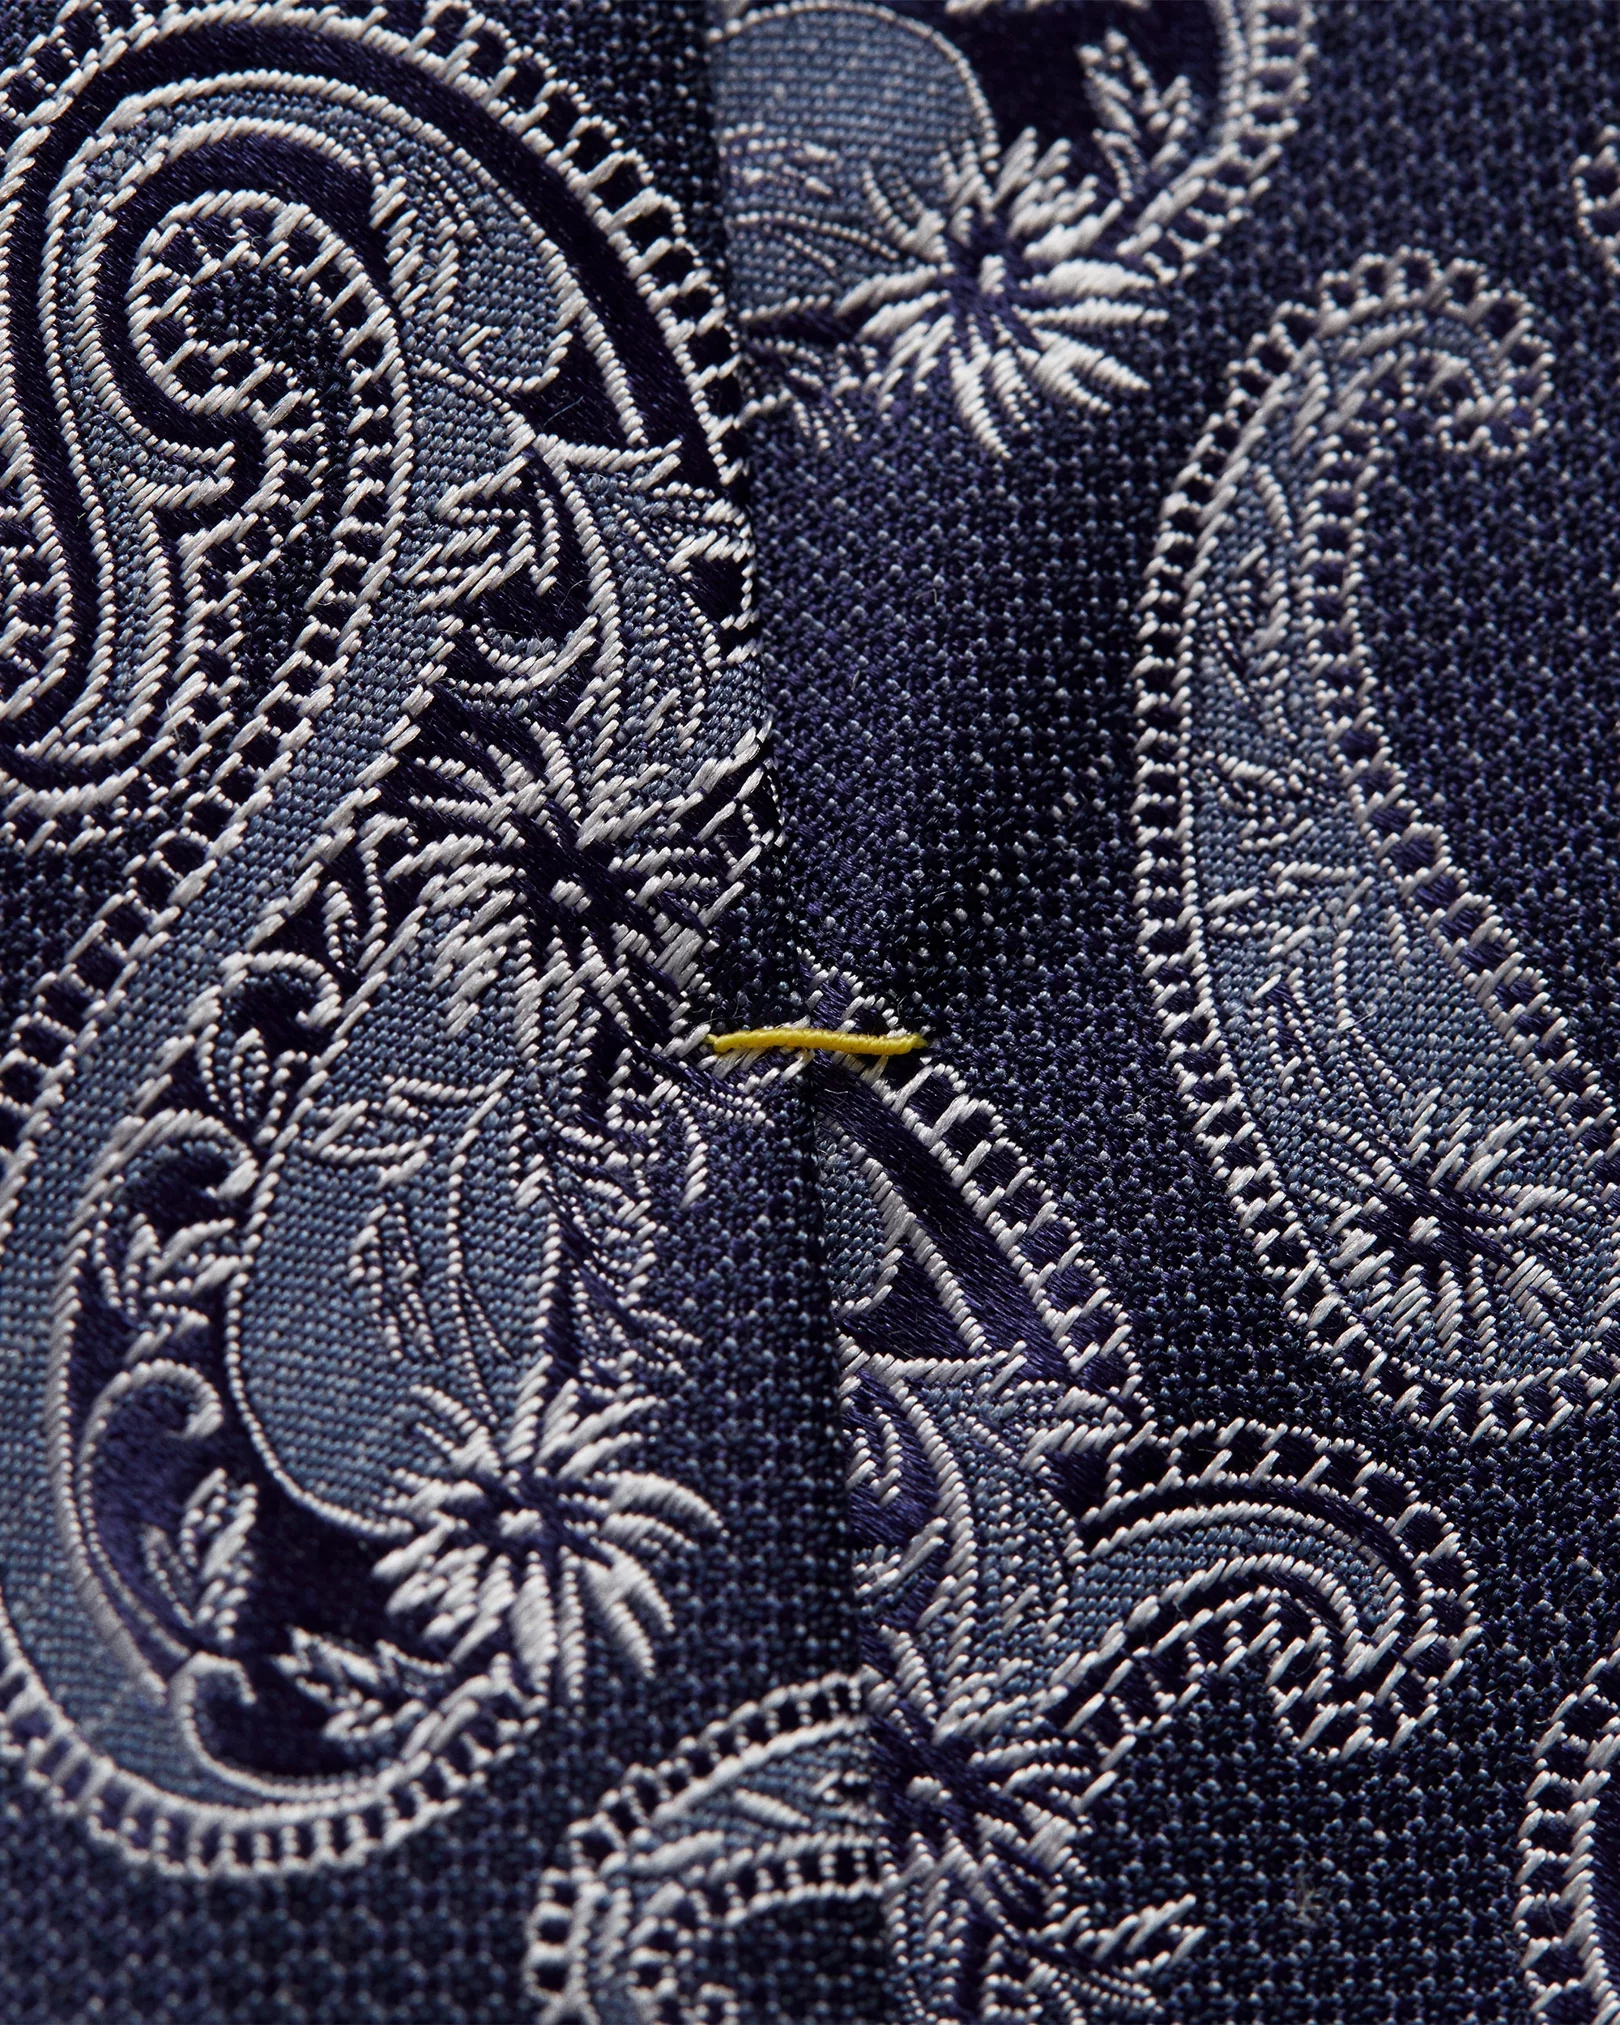 Eton - navy blue printed paisley tie